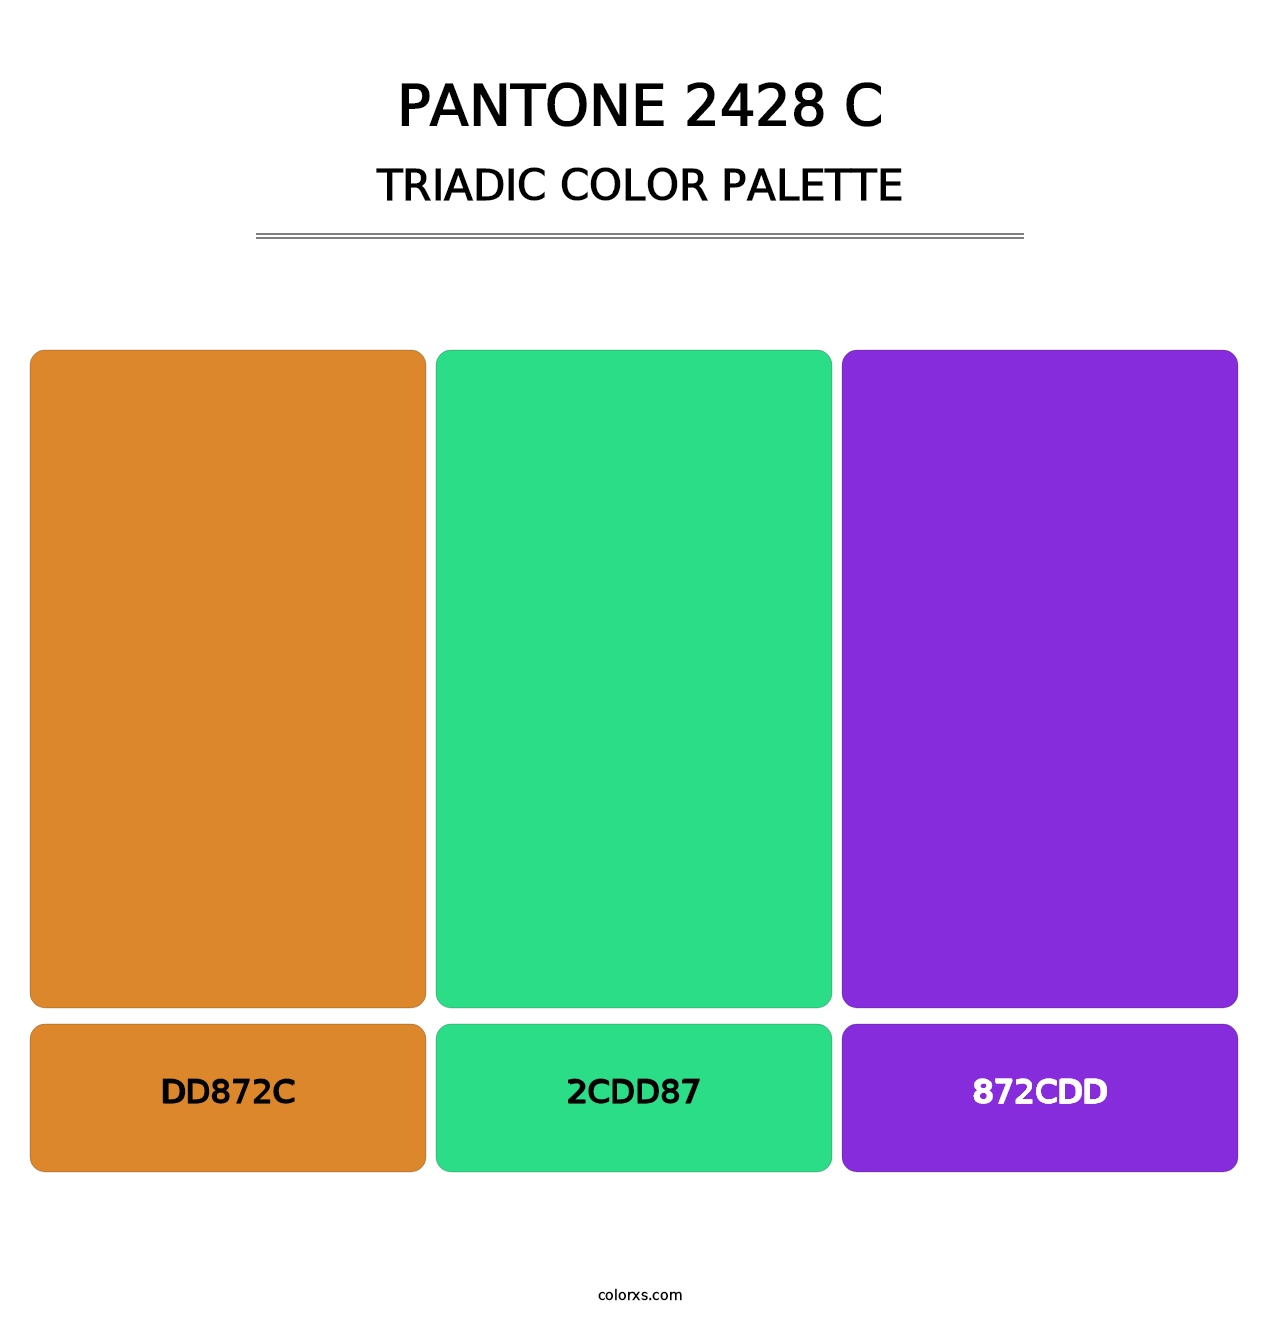 PANTONE 2428 C - Triadic Color Palette